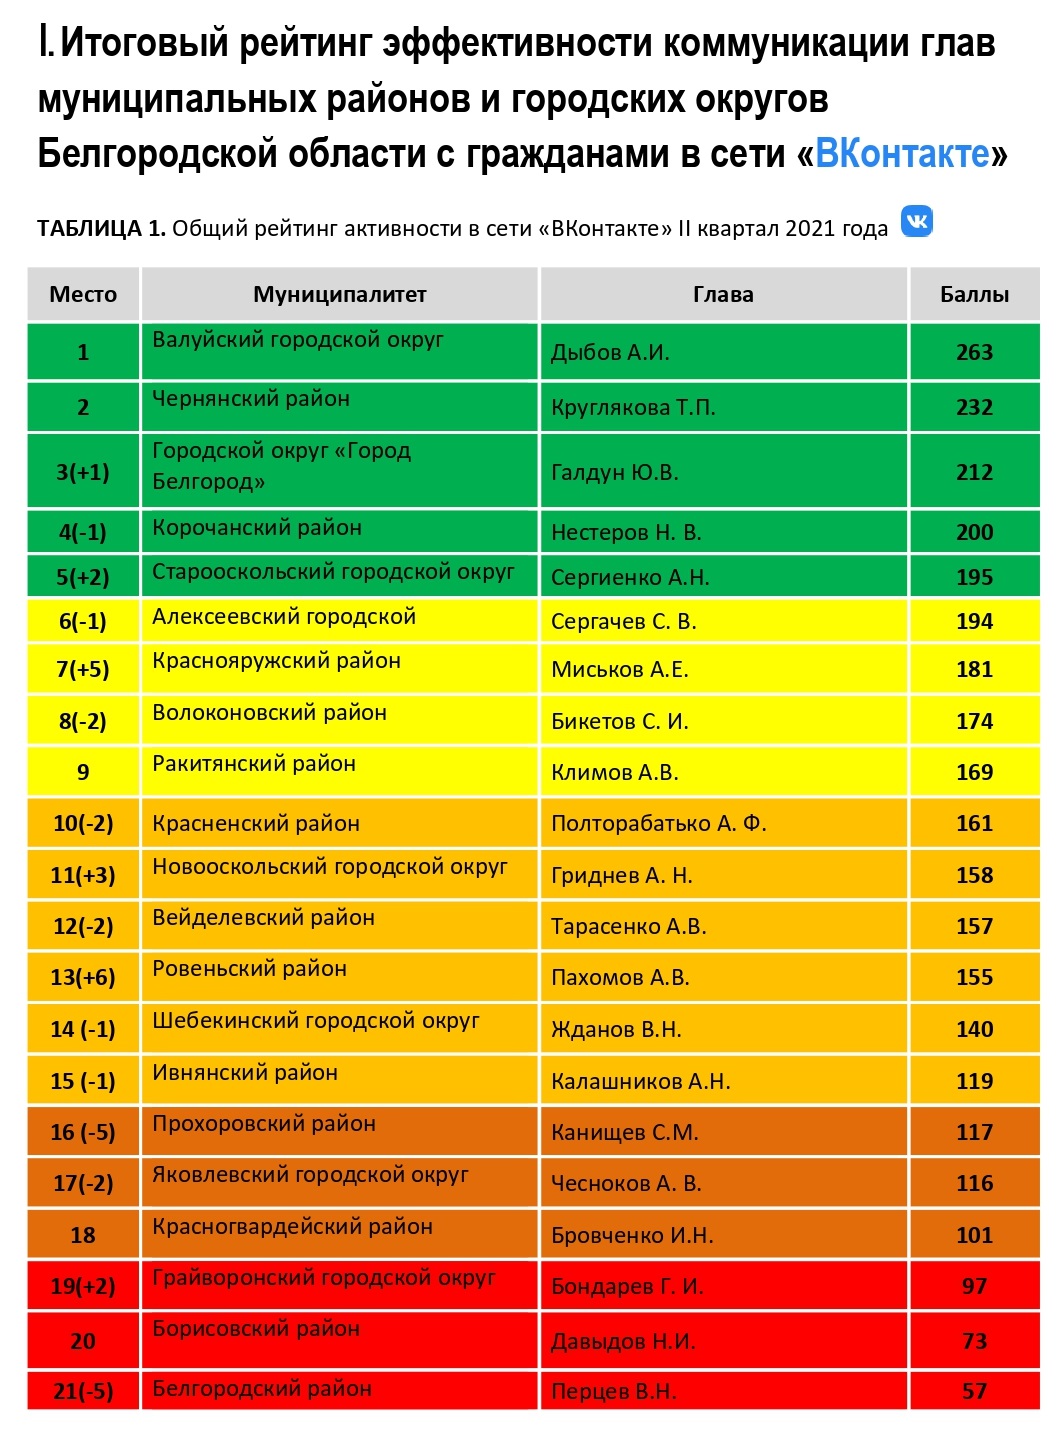 Рейтинг активности глав муниципалитетов Белгородской области в ВК второй квартал 2021